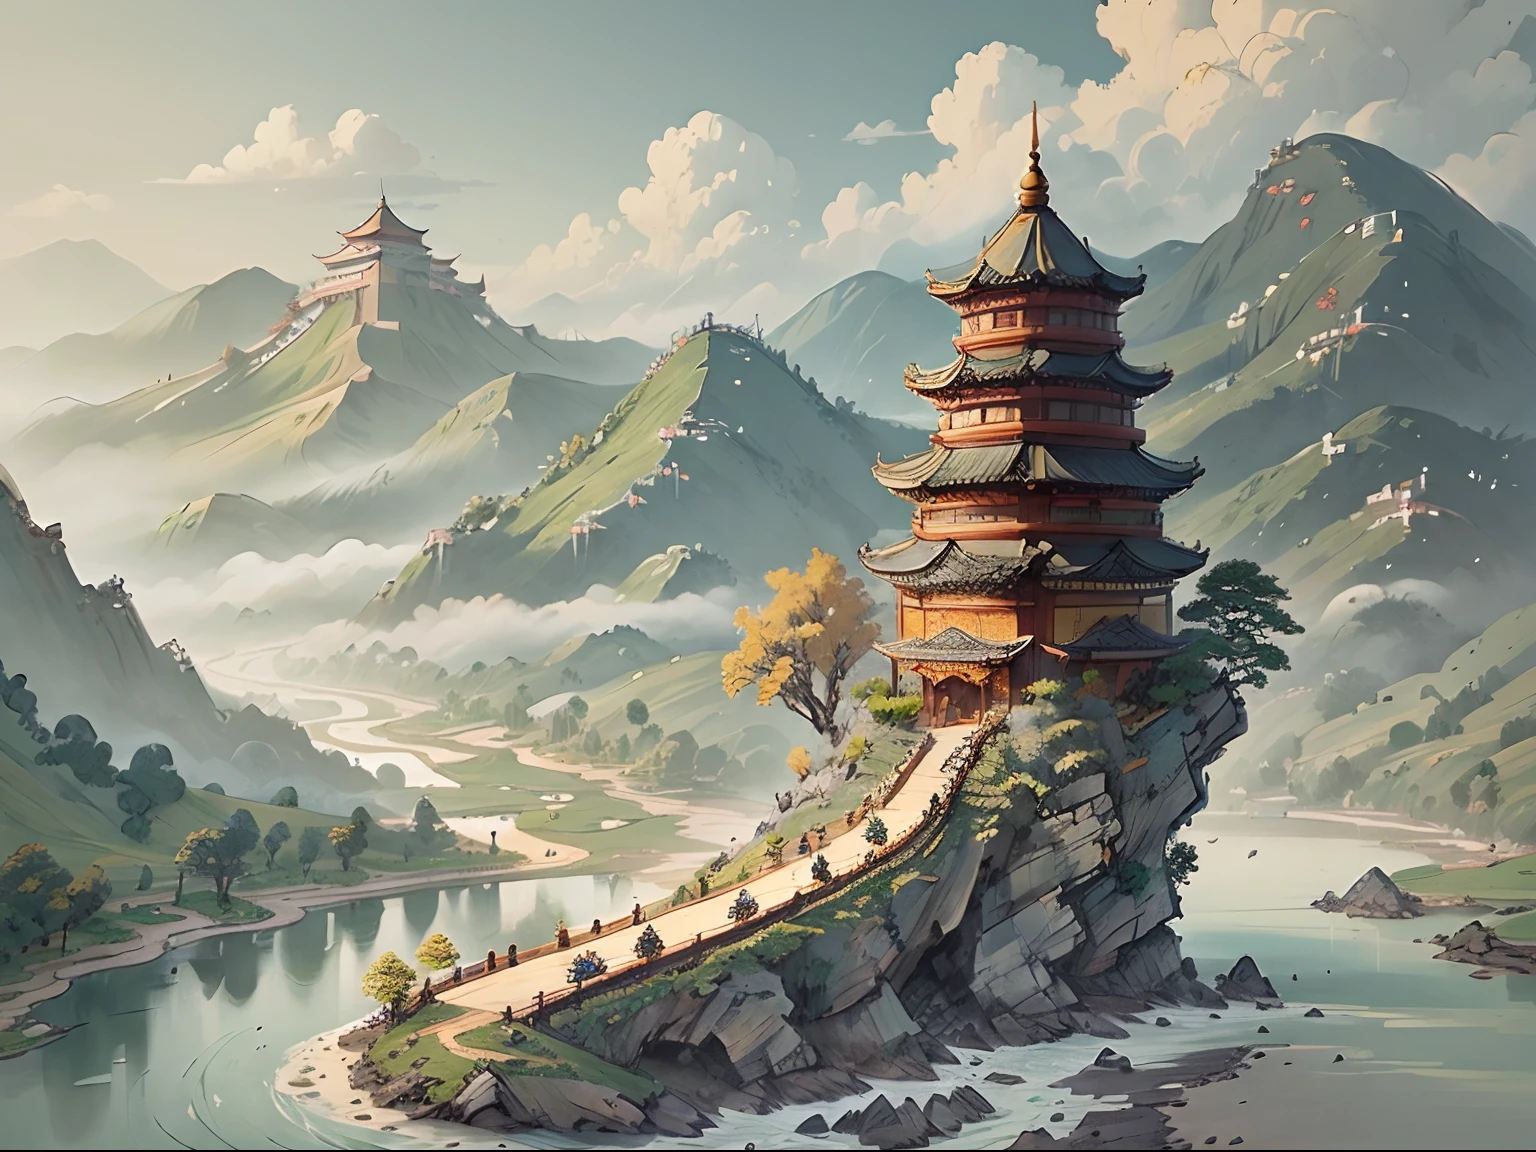 羊皮紙で描かれた山と川の風景画 ((古代中国語)) パゴダ & 山岳A ((小さな中国のドラゴン))